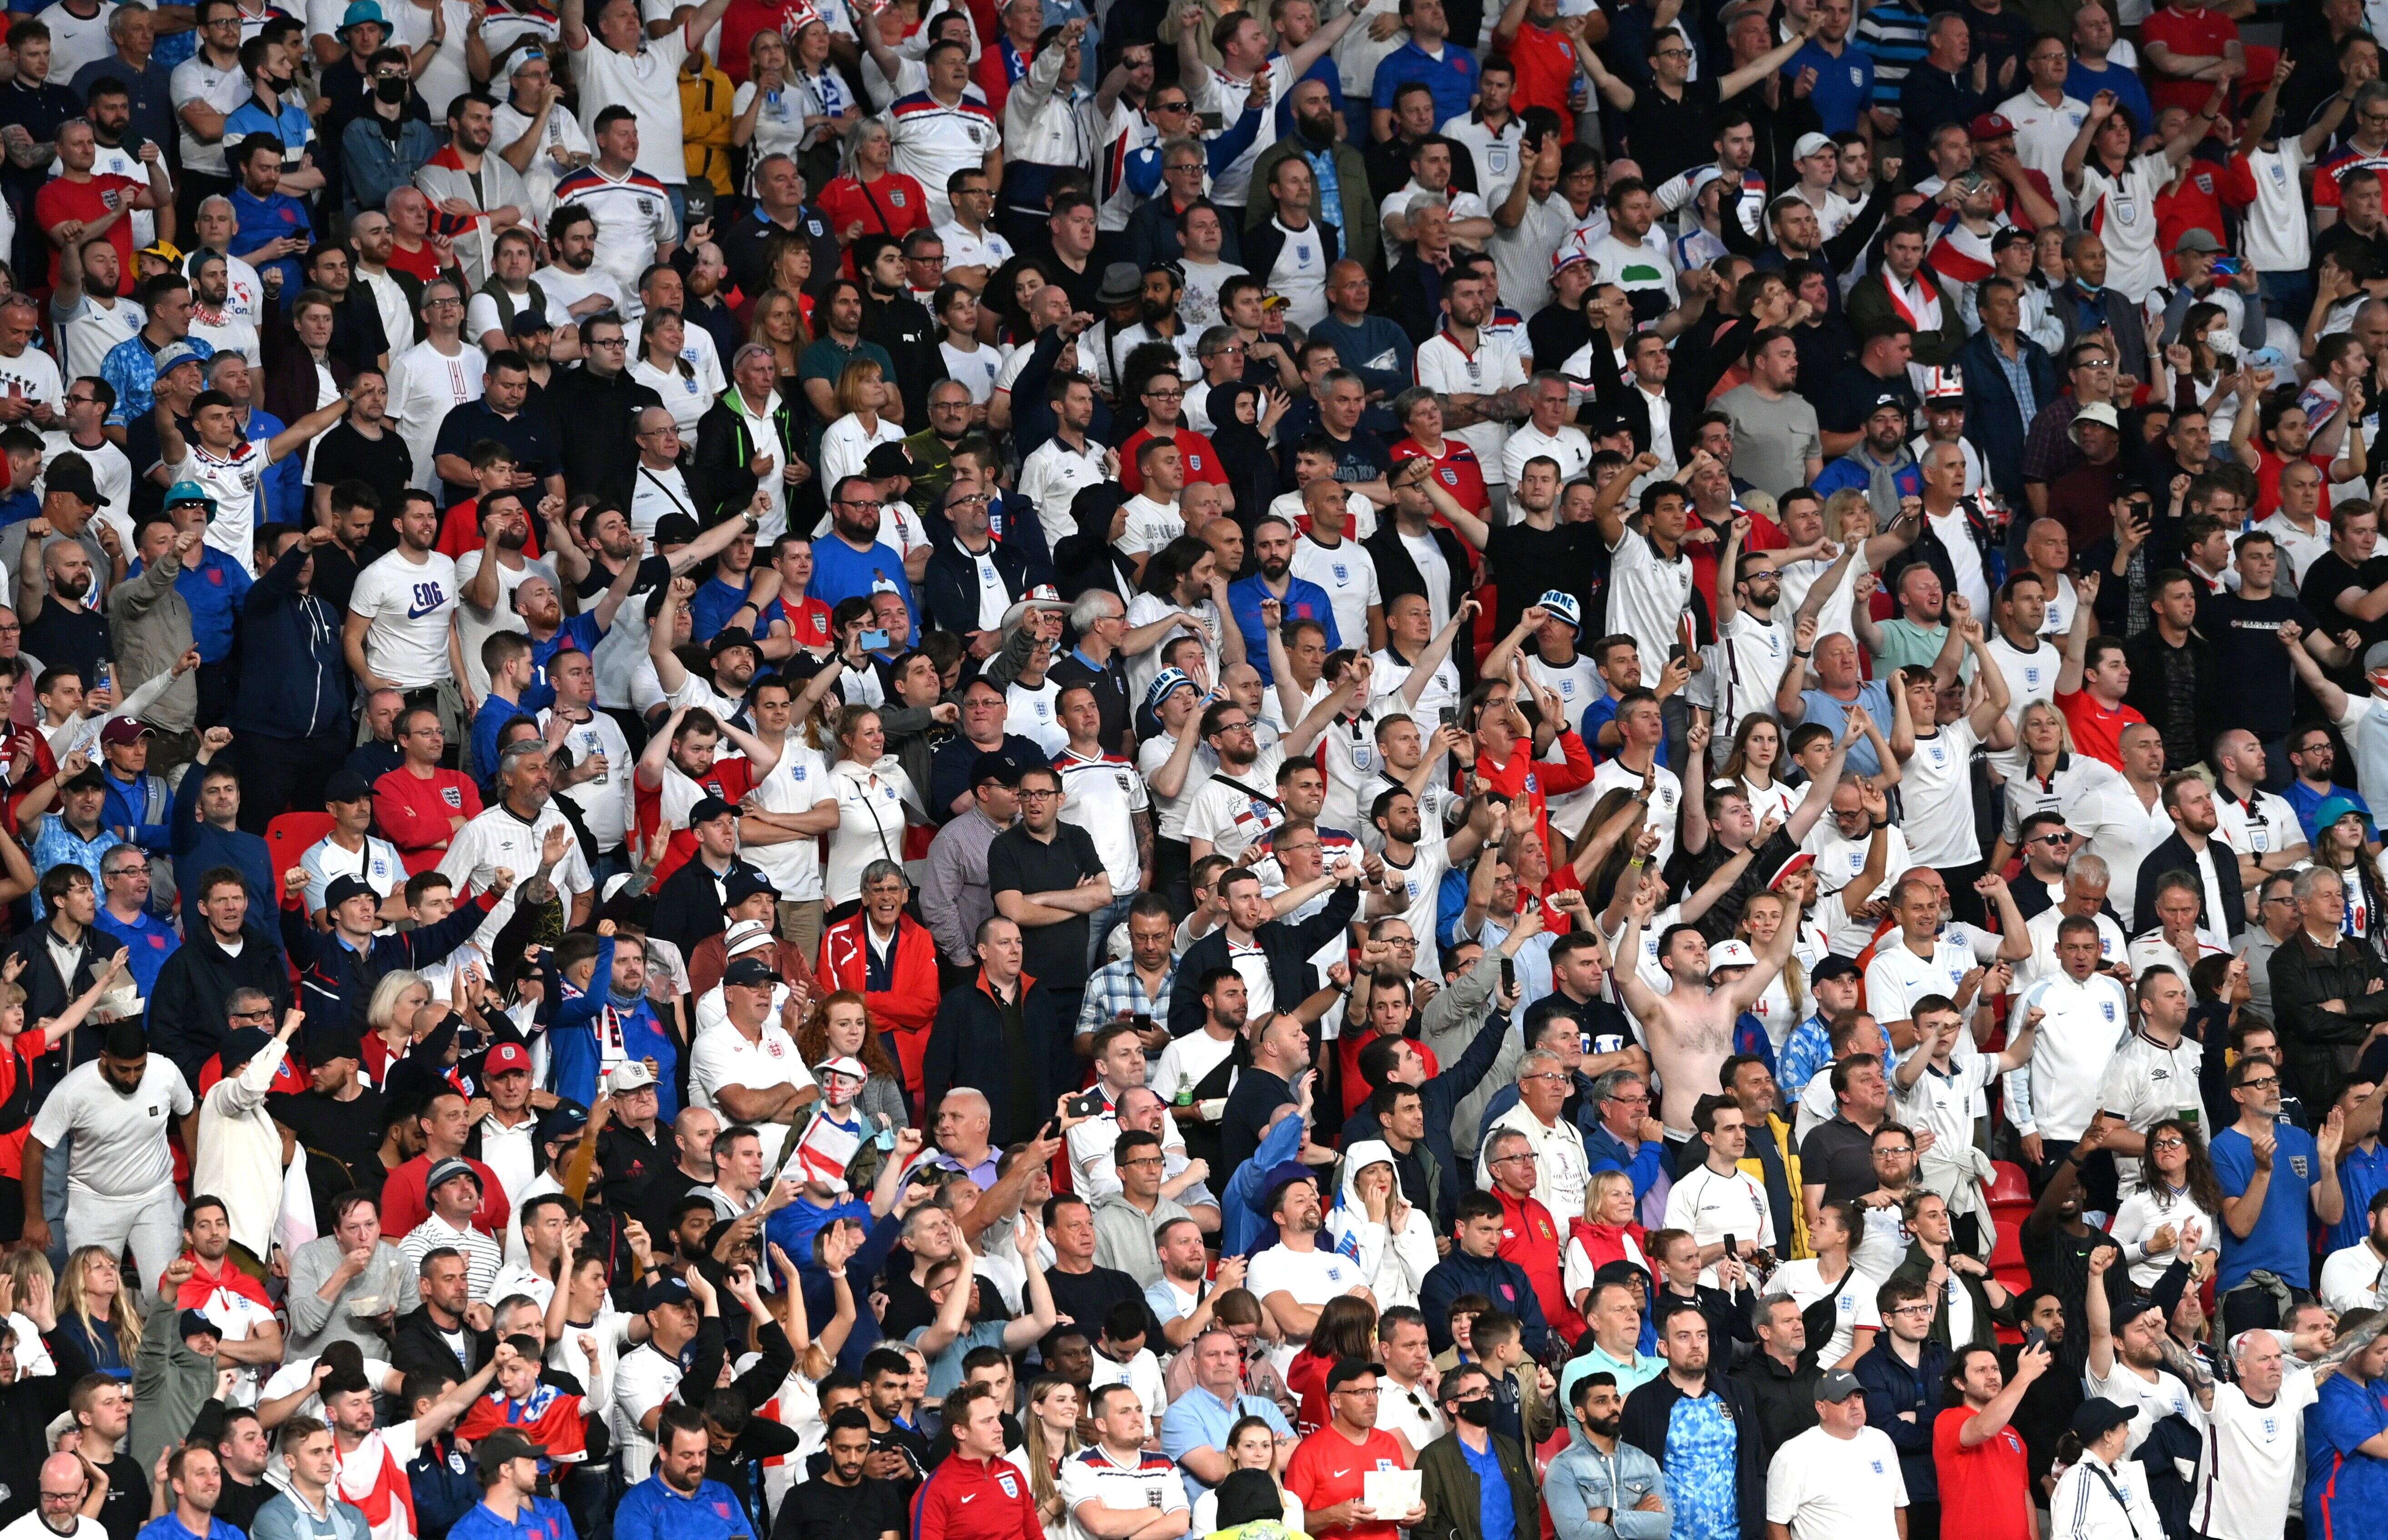 Des supporters lors de la finale de l'Euro 2020 opposant l'Angleterre à l'Italie, le 11 juillet 2021 à Wembley, Londres